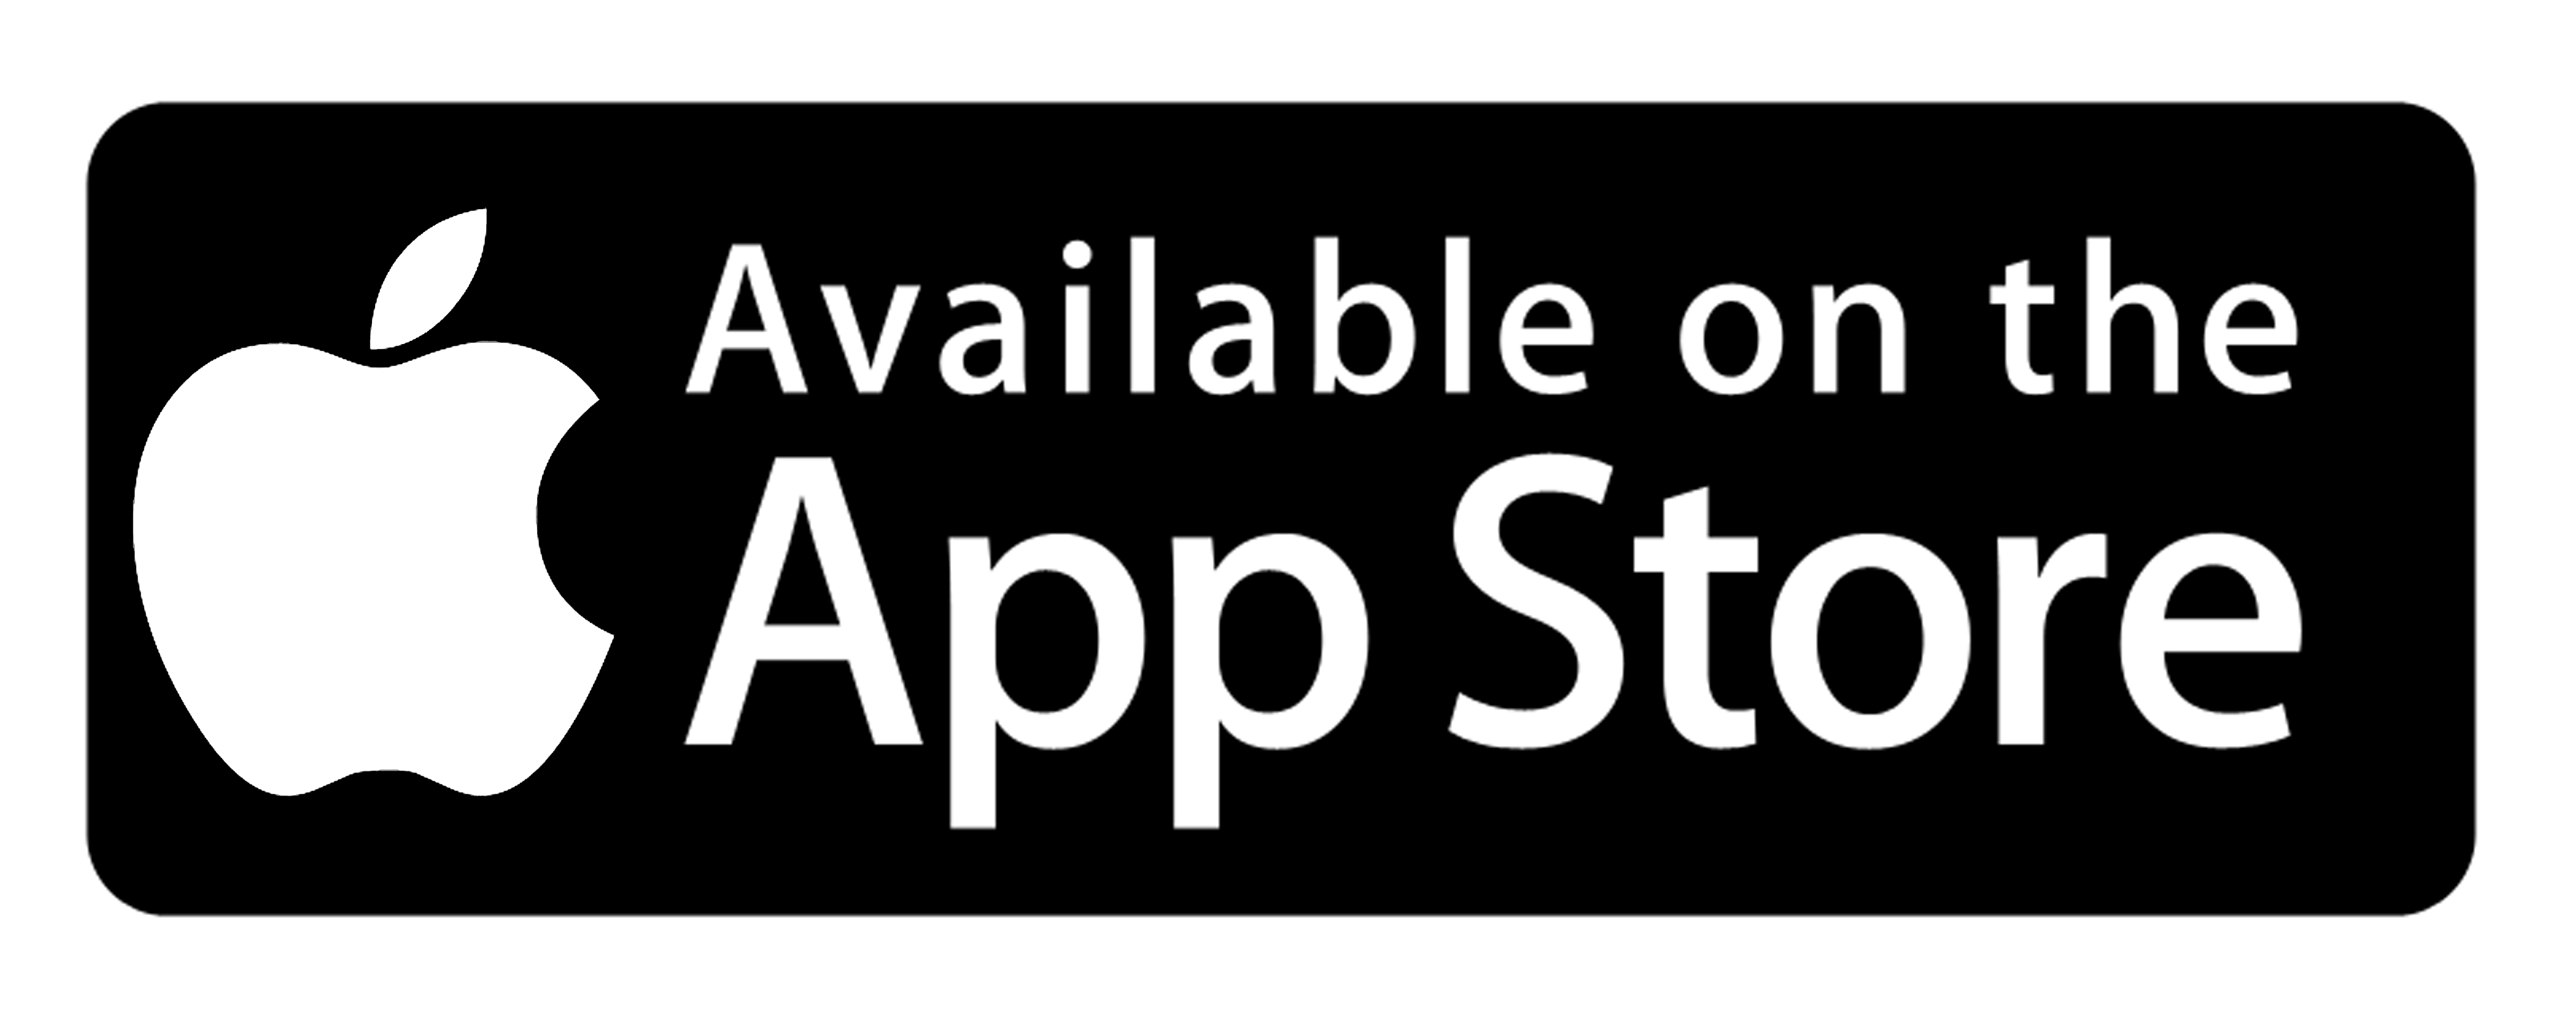 iOS App Store Logo - appstore